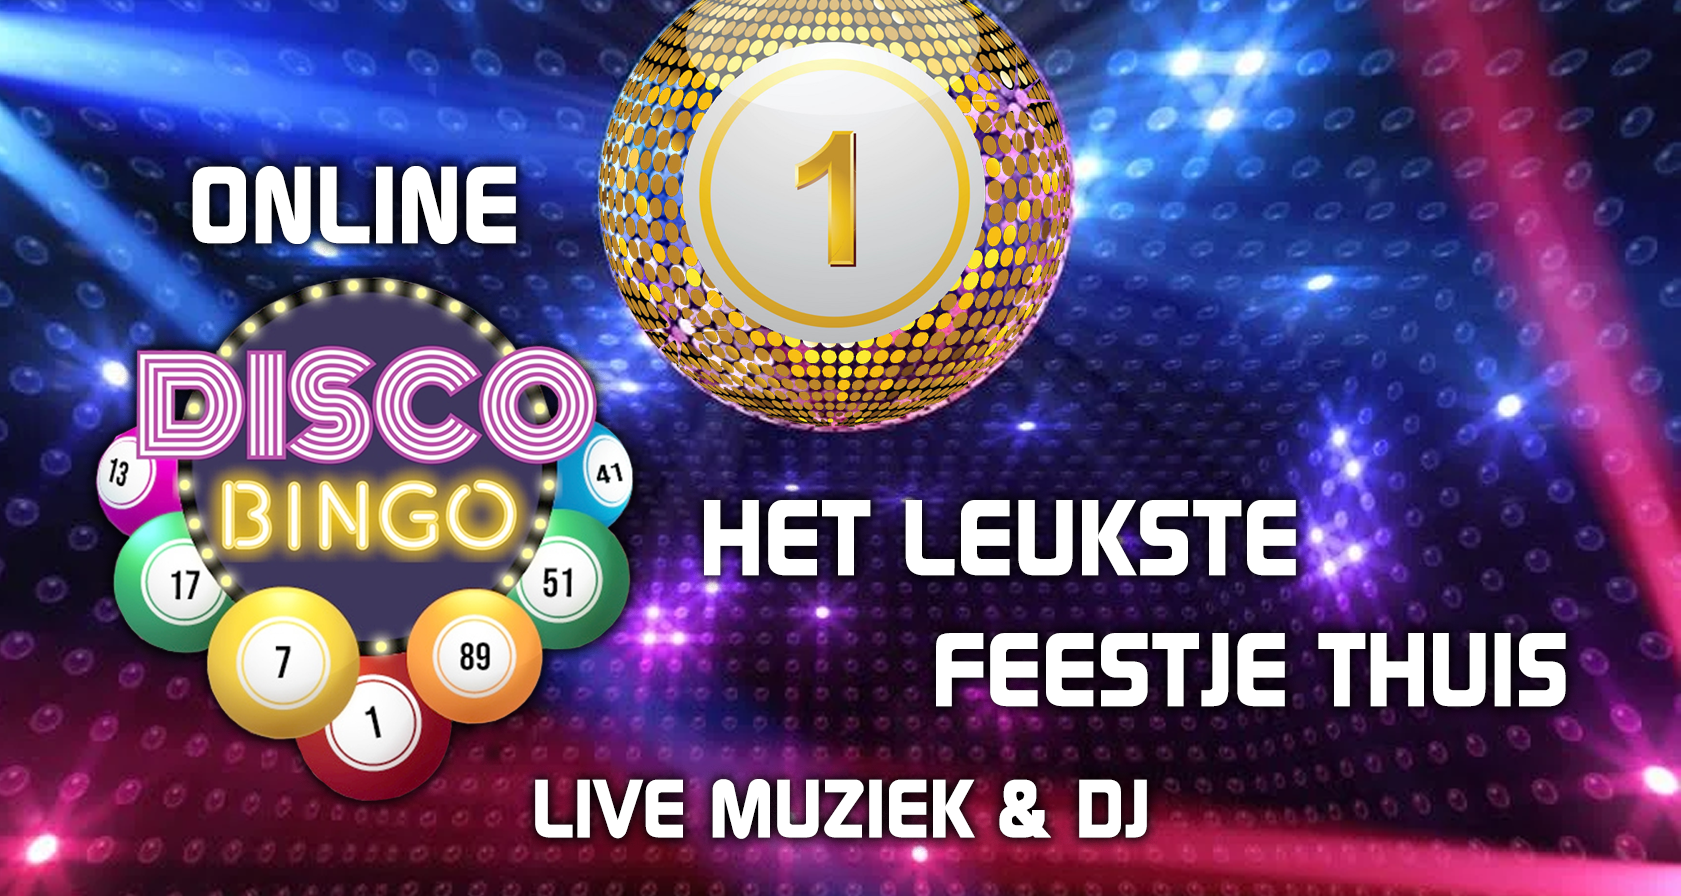 Teamuitje Nijmegen: Muziek bingo online live DJ